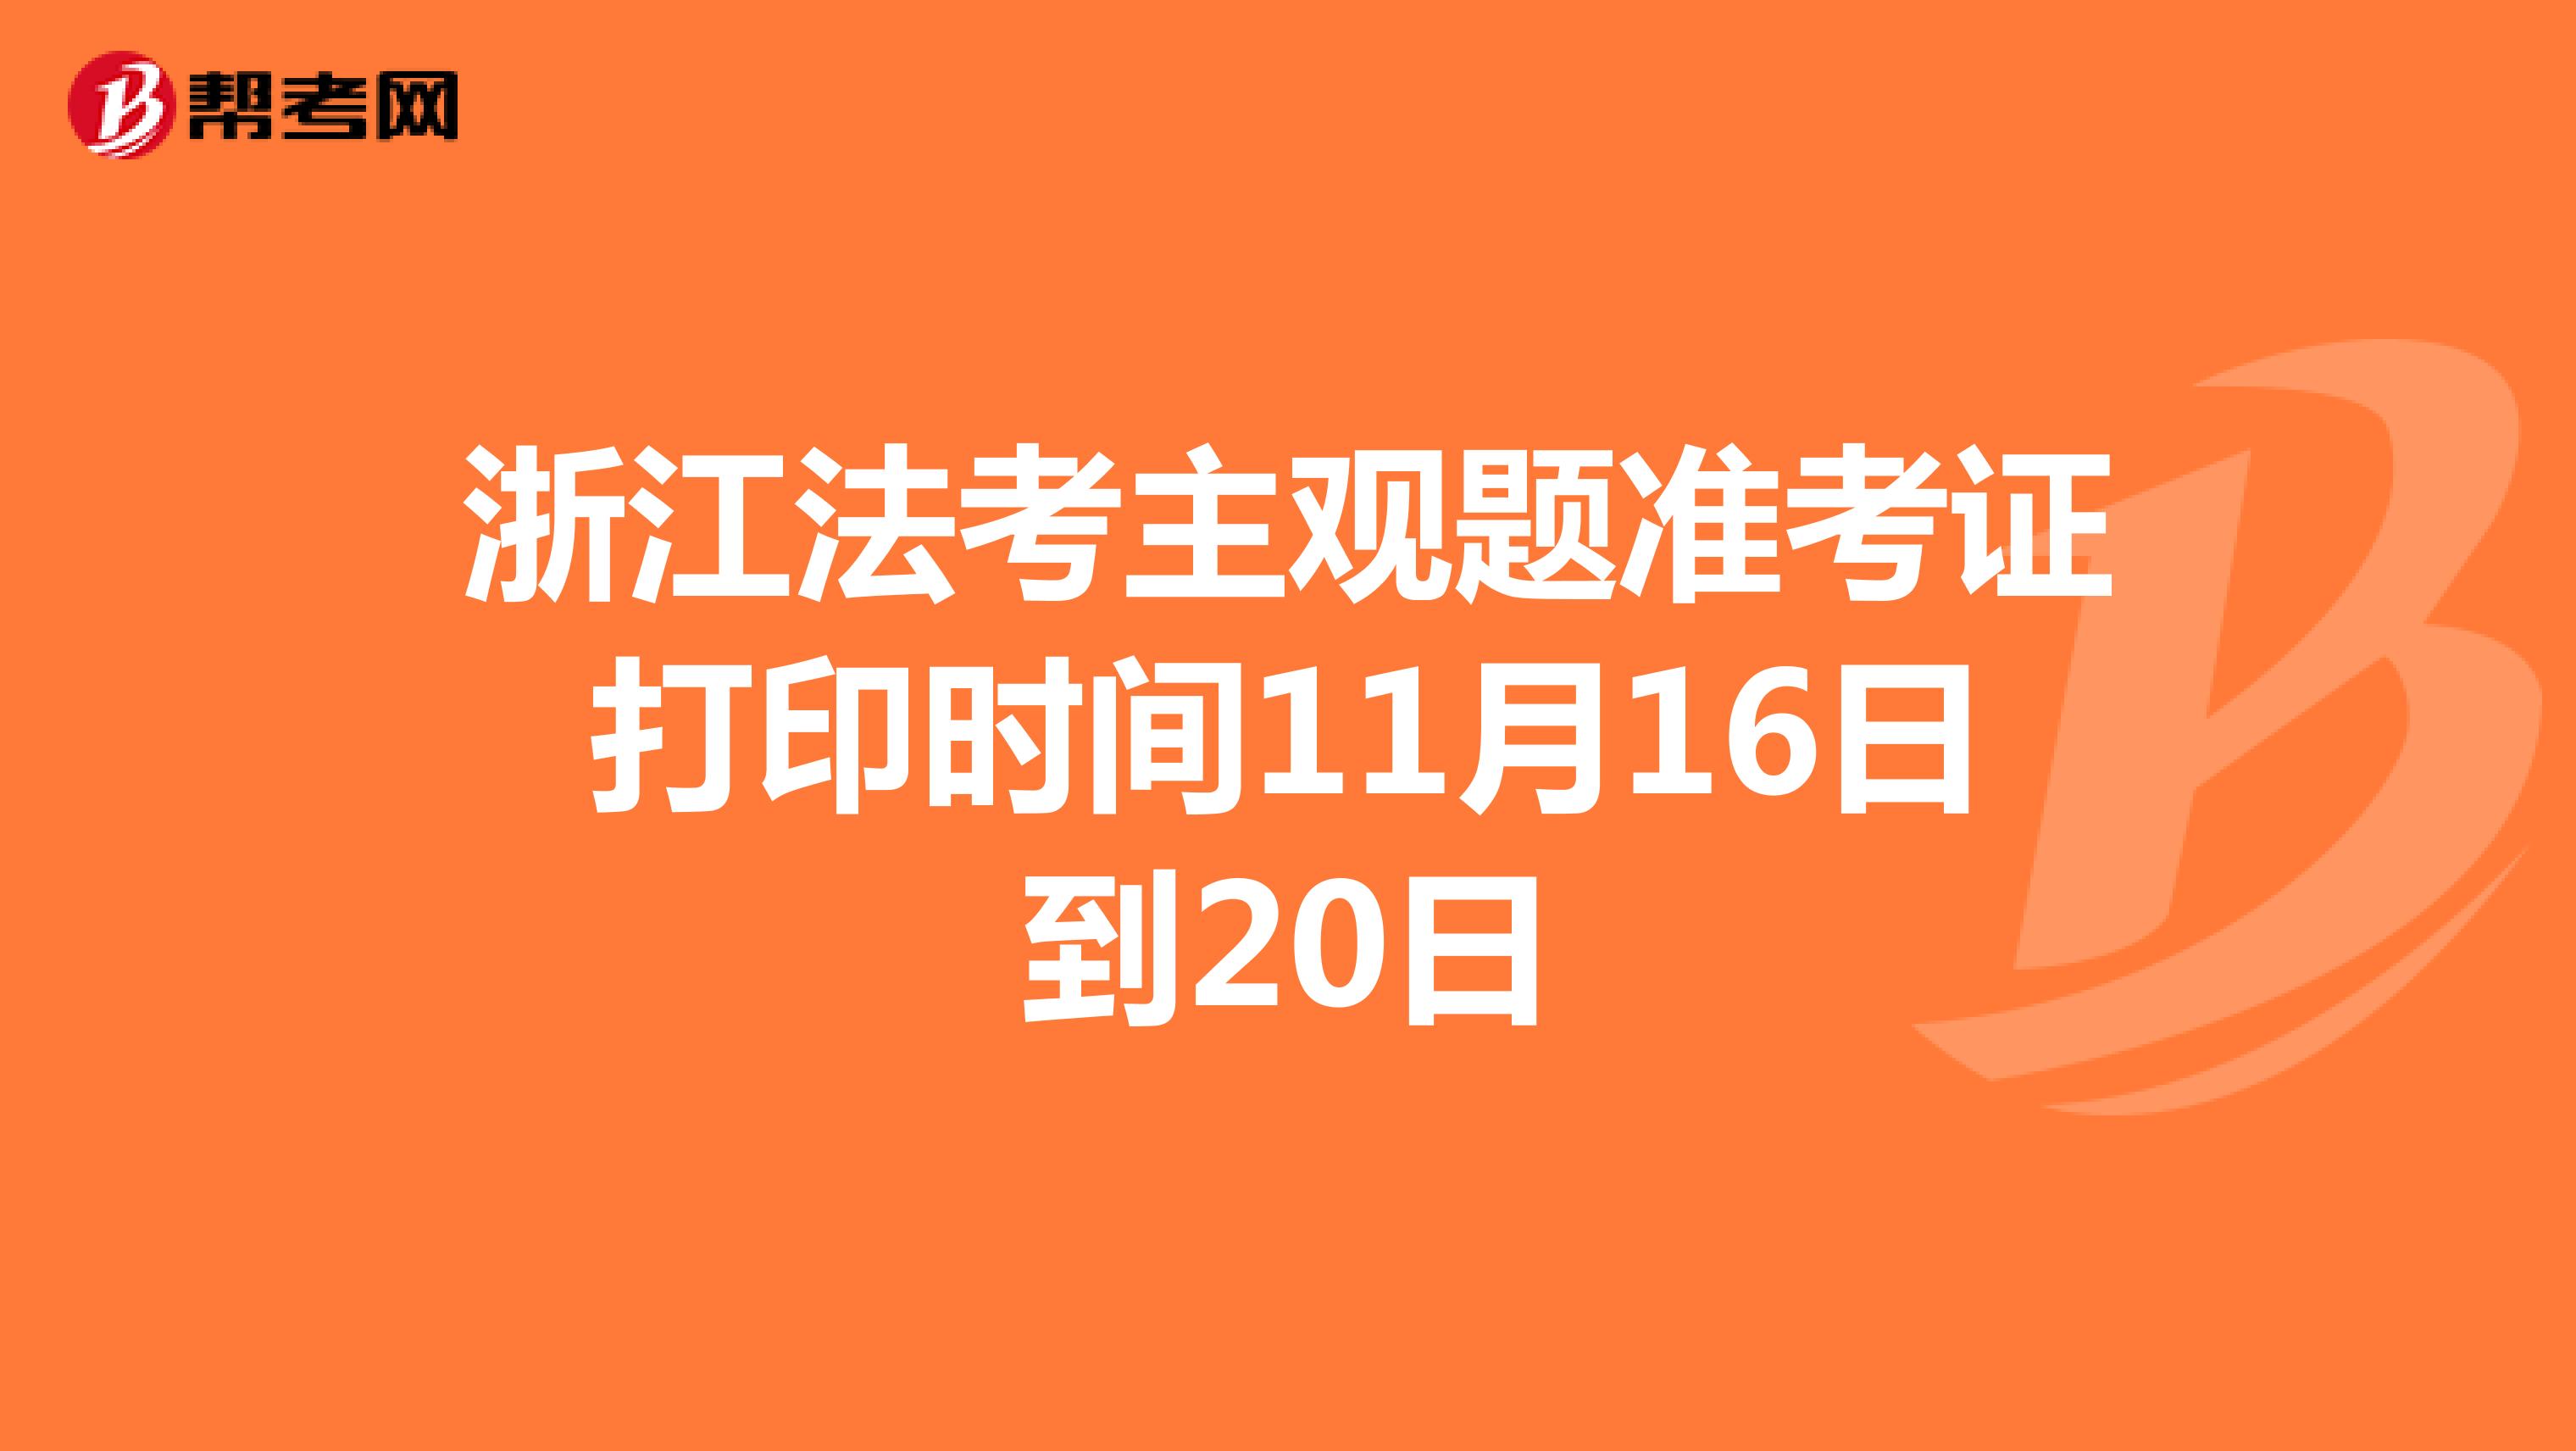 浙江法考主观题准考证打印时间11月16日到20日